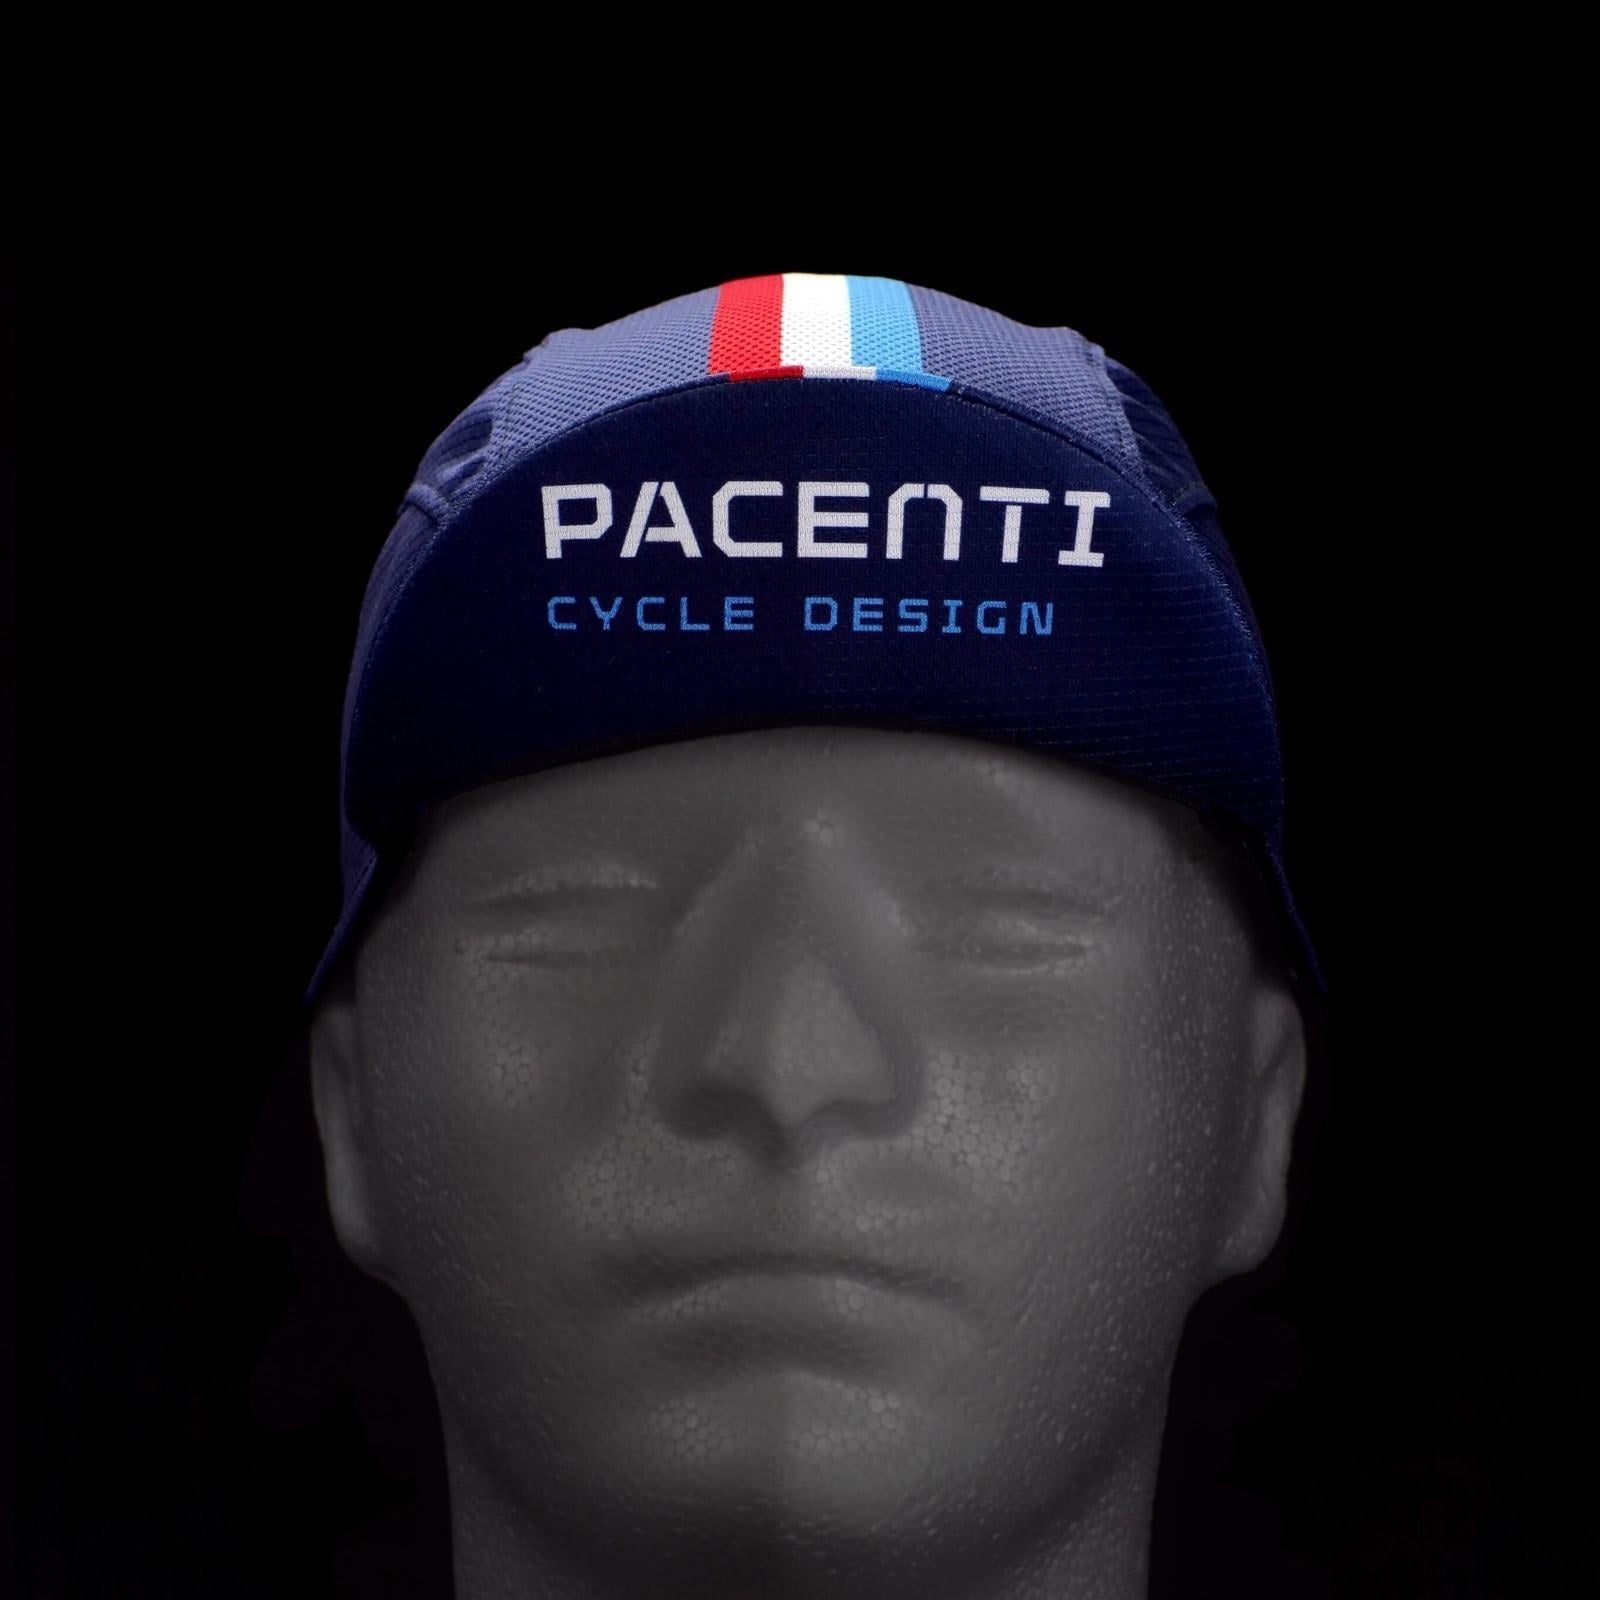 Pacenti cap lightweight blue s/m